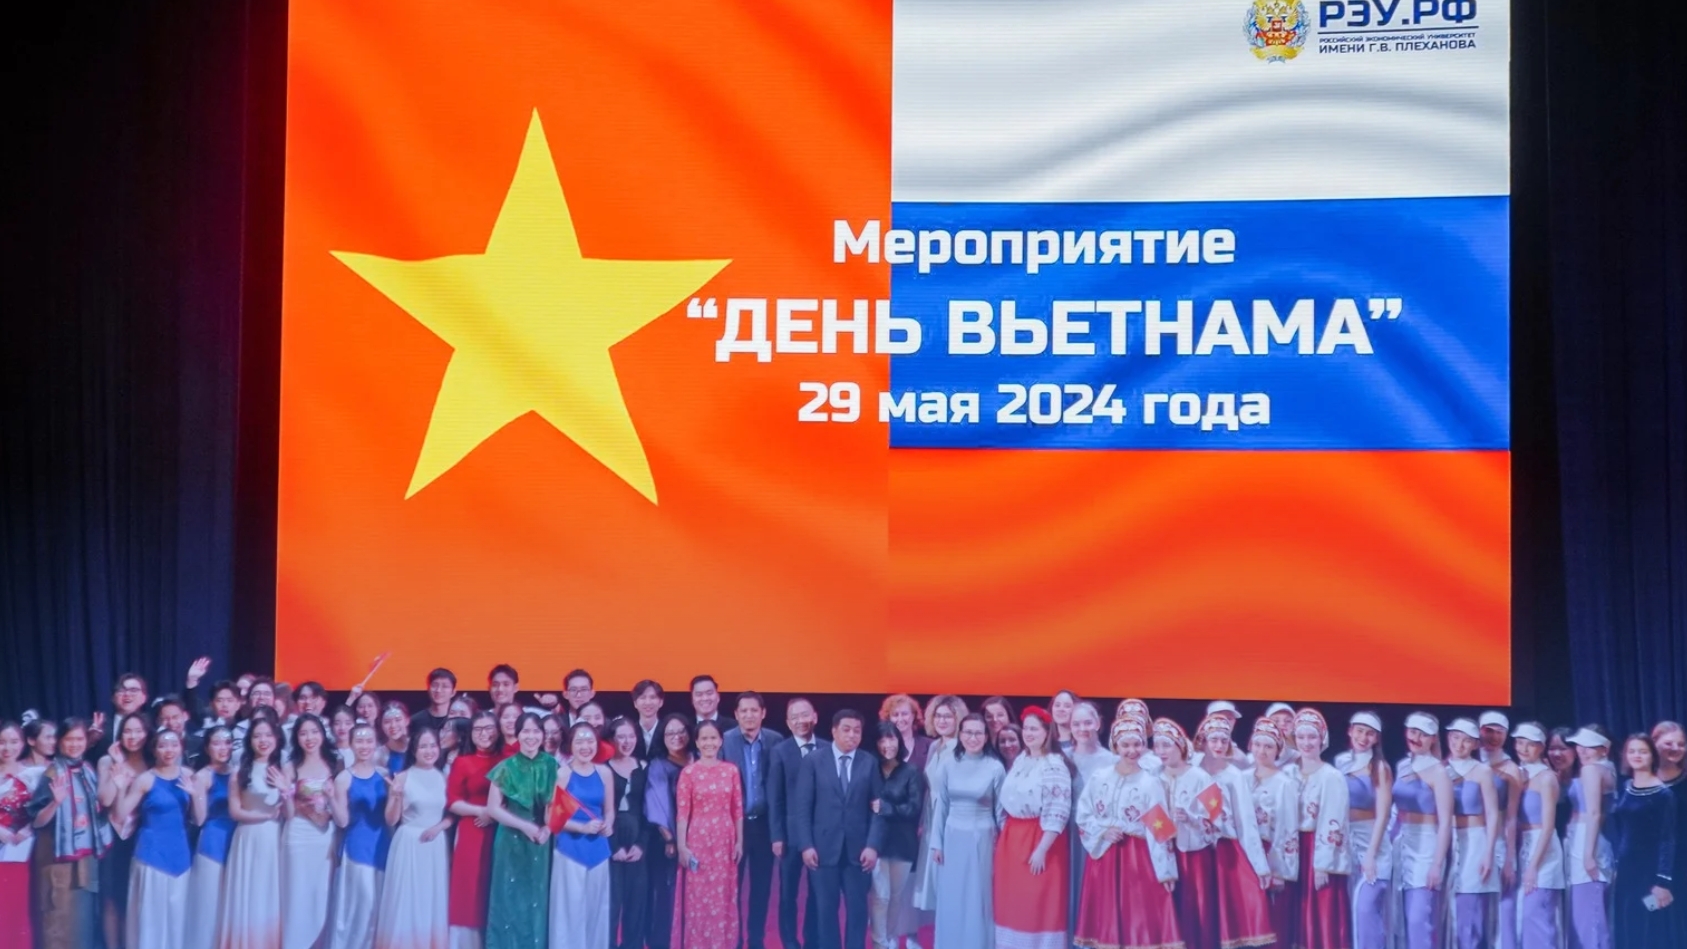 Cовместное сохранение и укрепление отношений дружбы между вьетнамом и россией